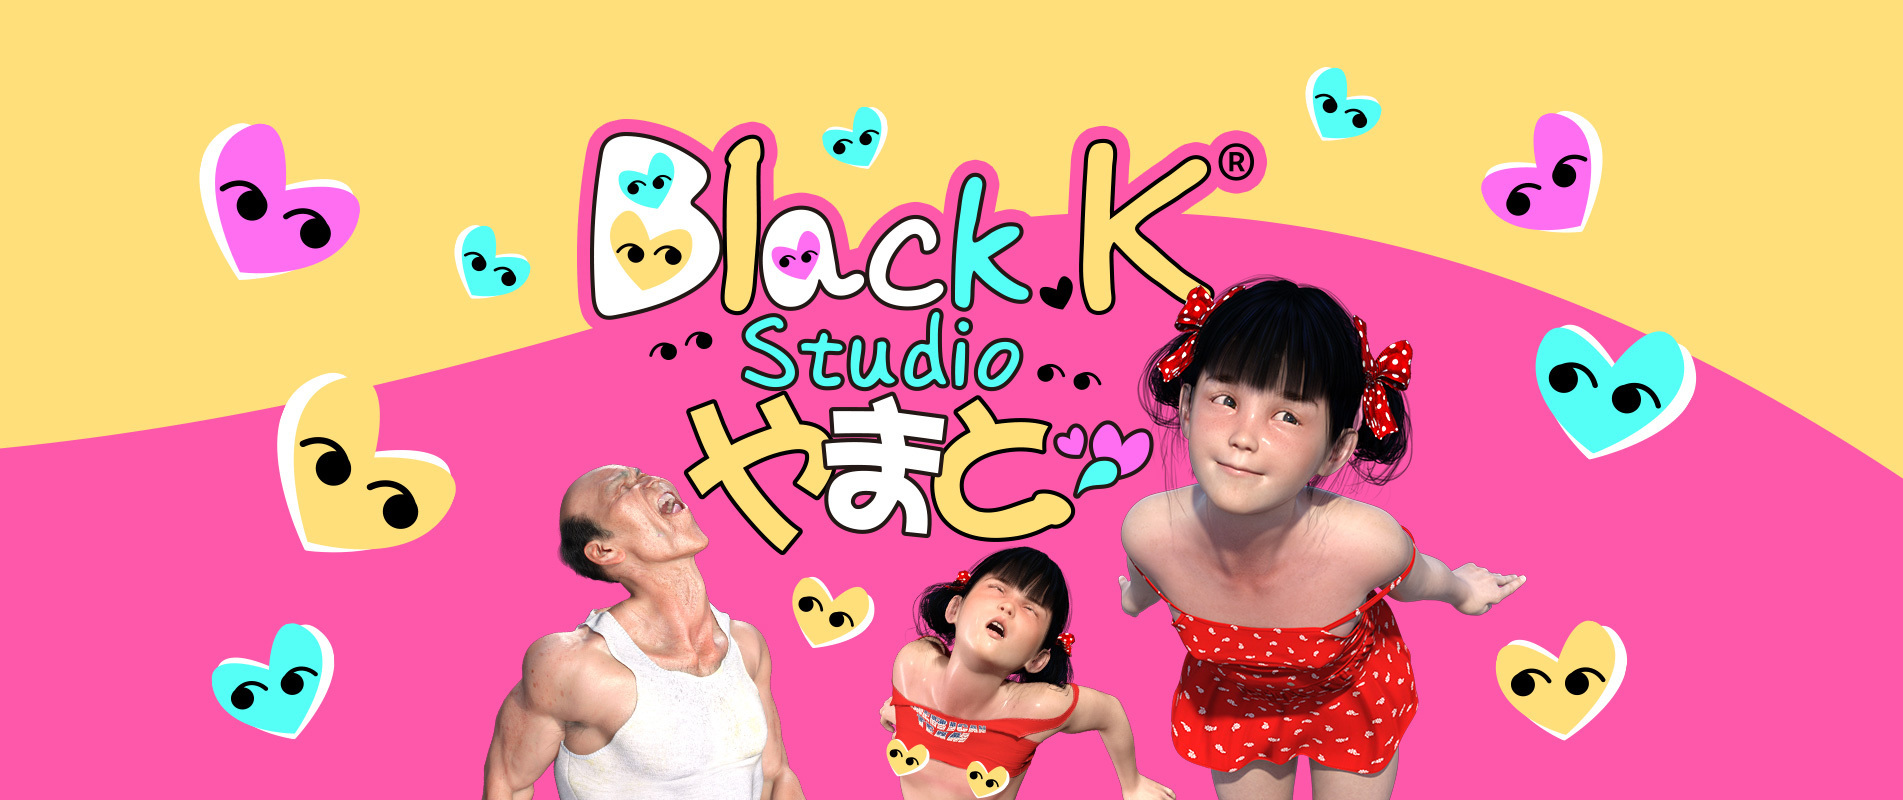 blackK-studio.